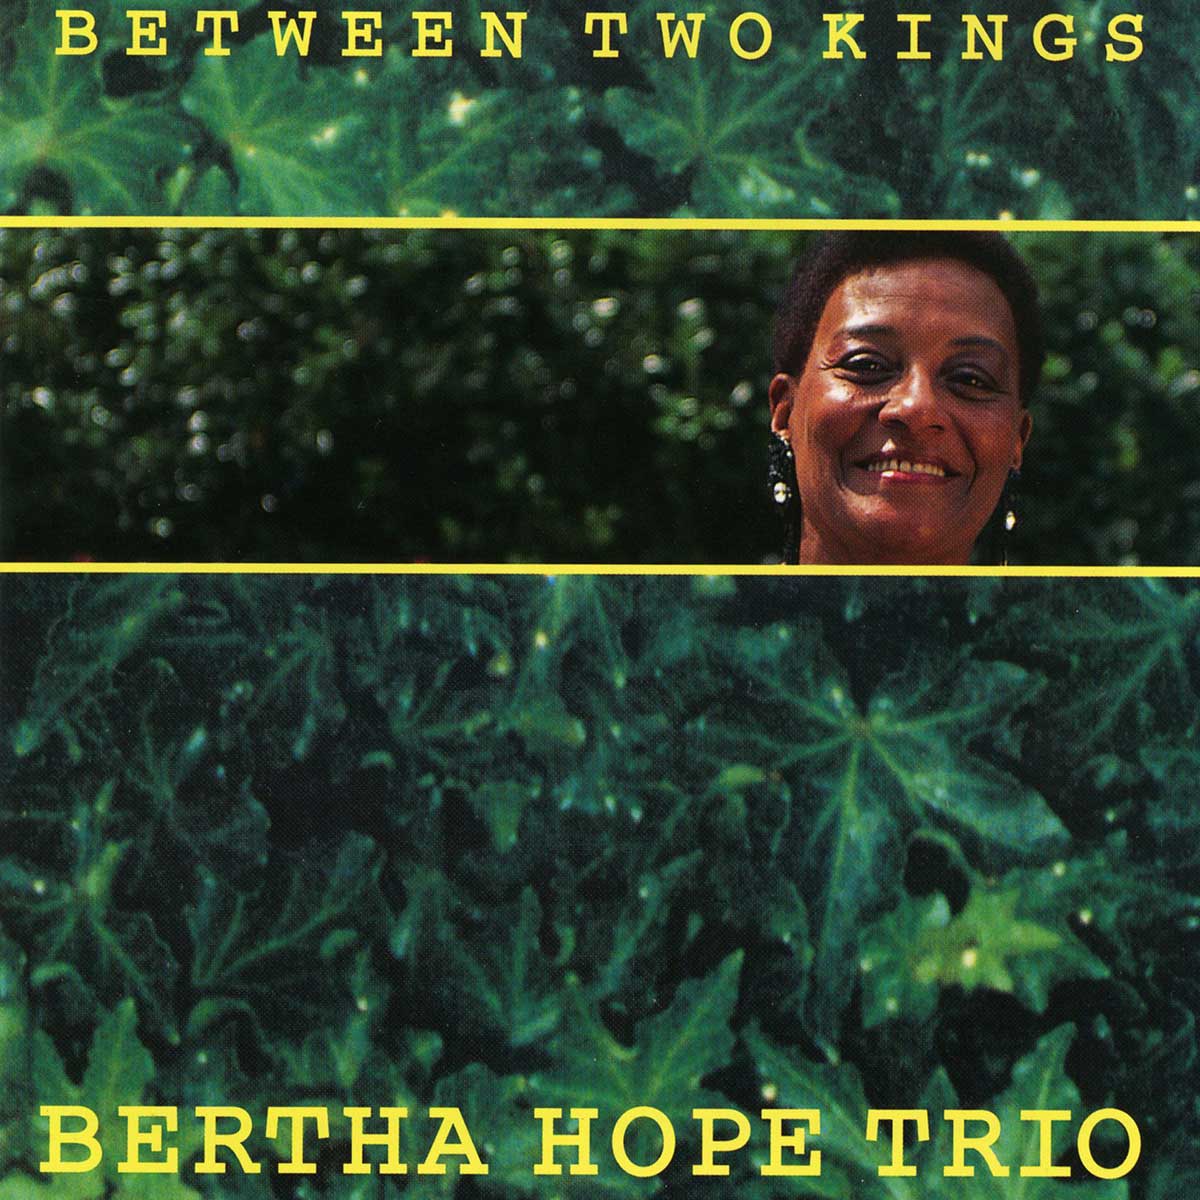 Berta Hope Trio Between Two Kings